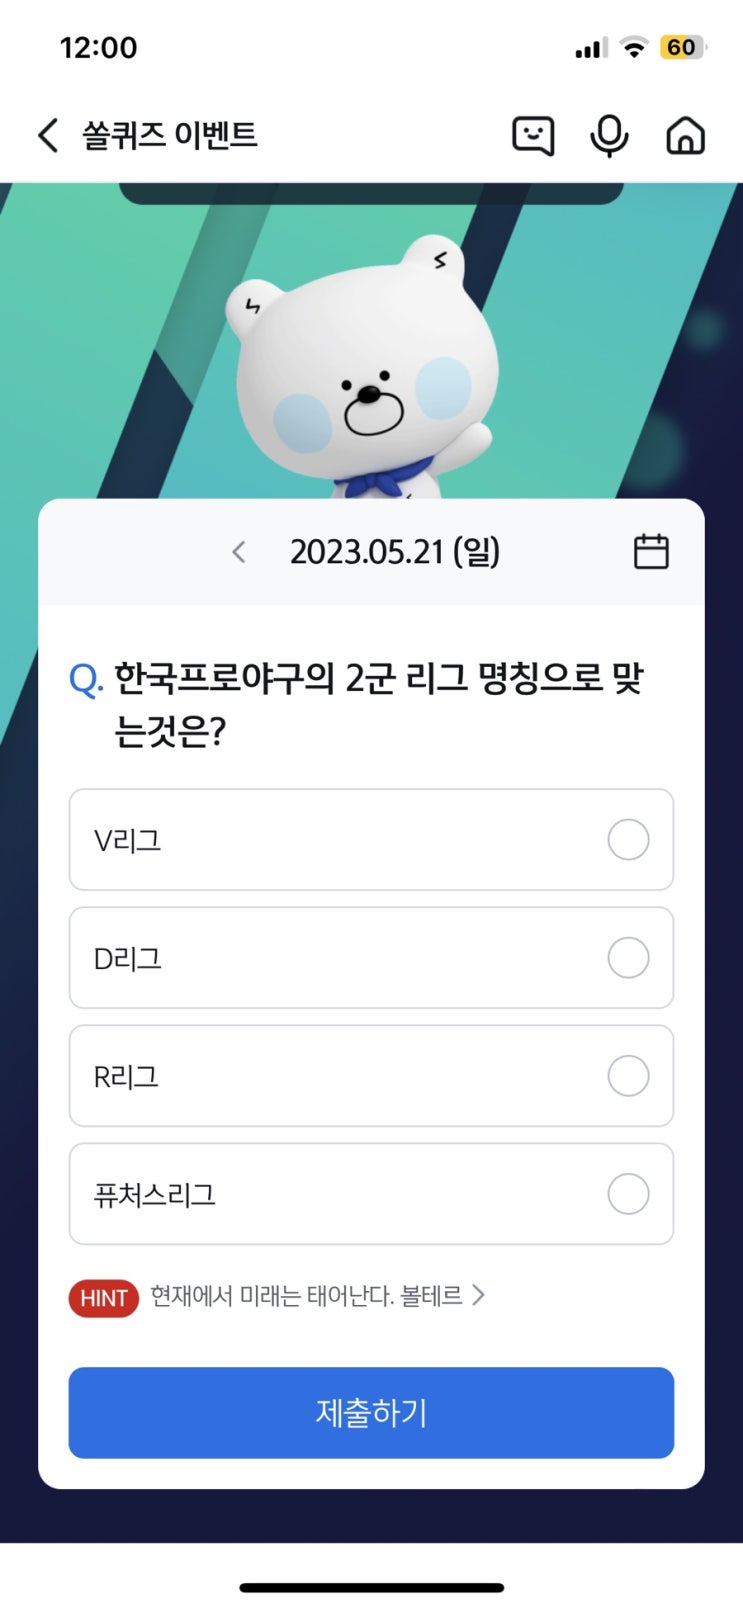 신한 쏠퀴즈(쏠야구) 5월21일 정답 - 한국프로야구의 2군 리그 명칭으로 맞는것은?